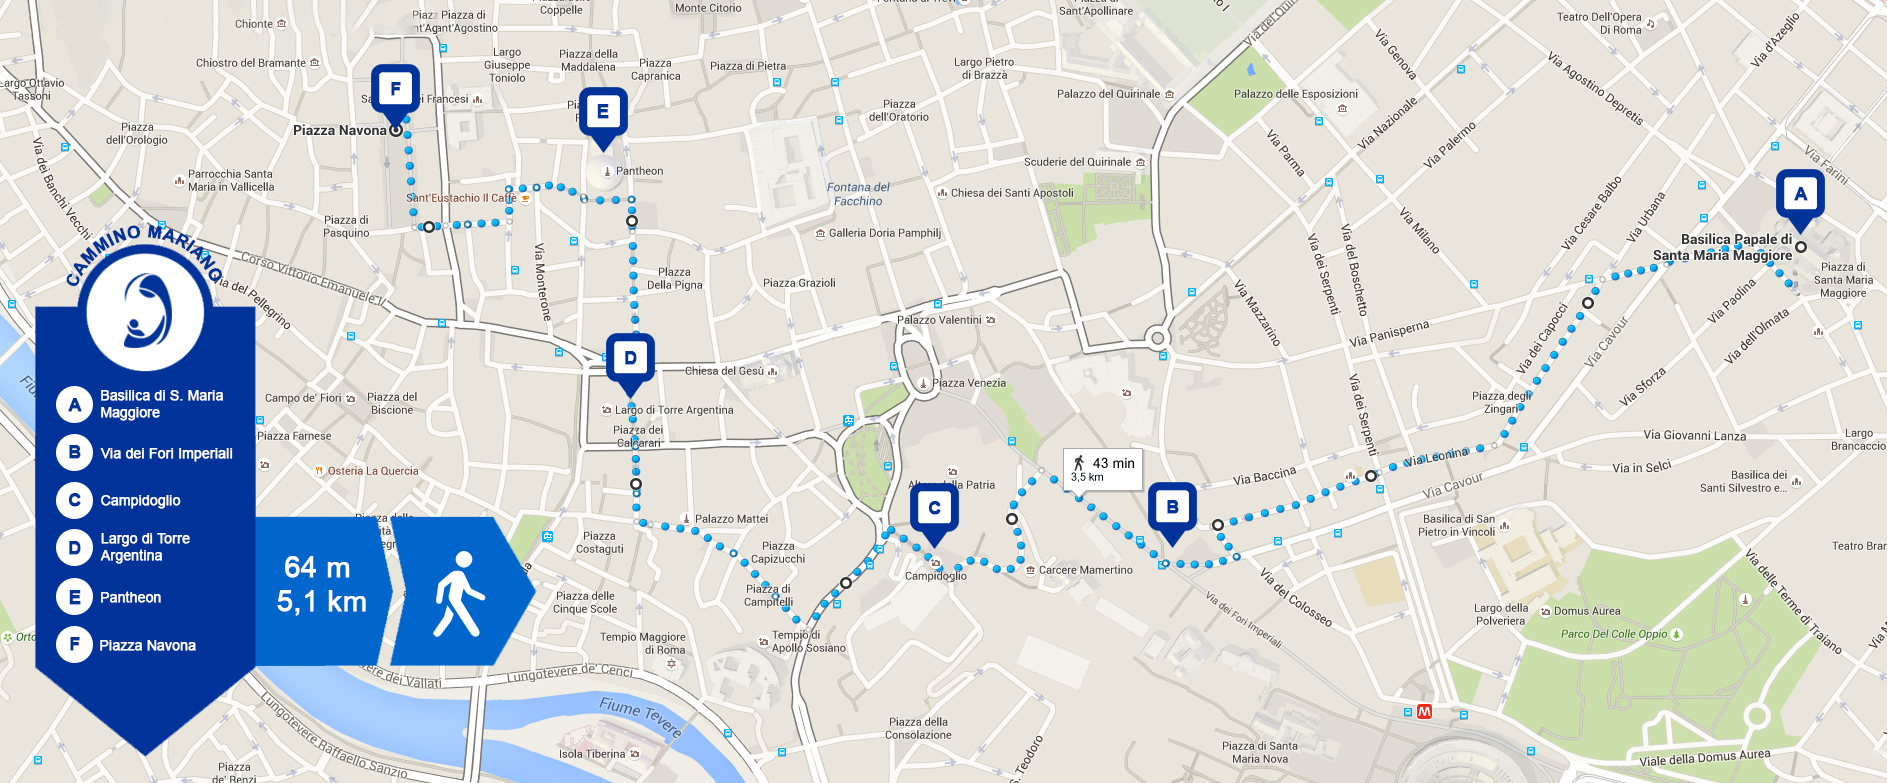 Il Cammino Mariano è l'unico che parte dalla Basilica di Santa Maria Maggiore. Si tratta di poco più di 5 km